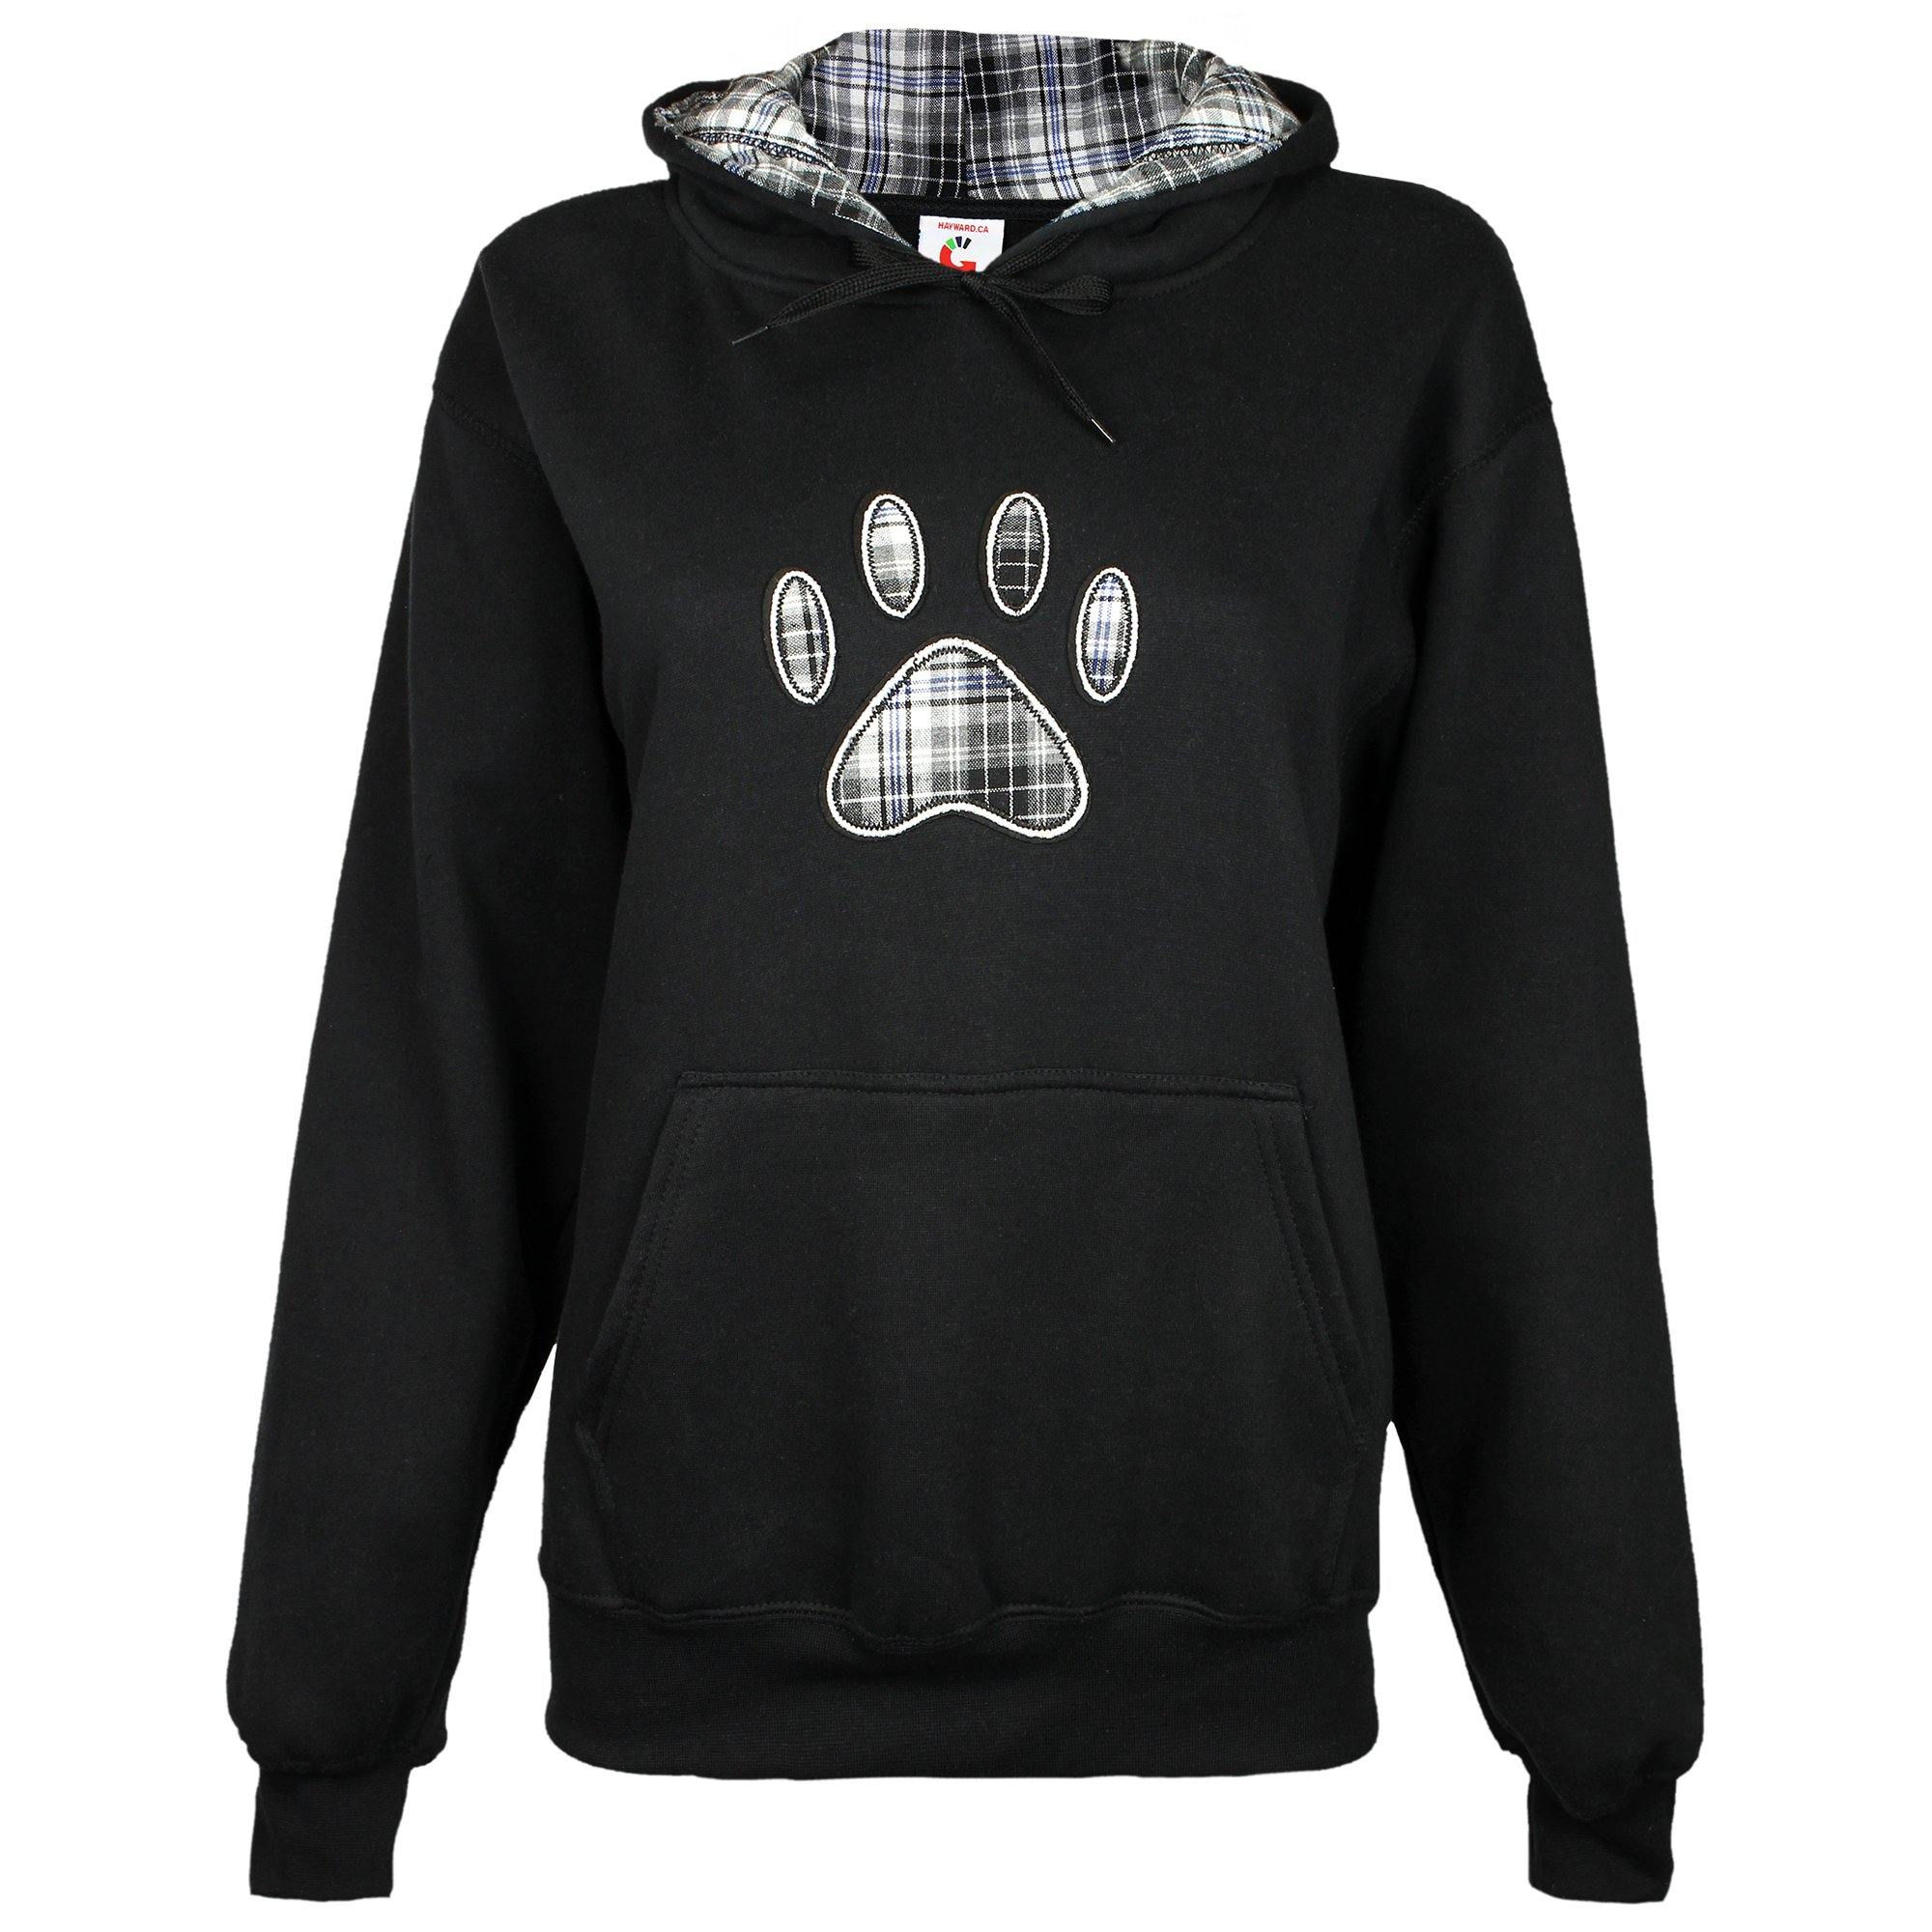 Plaid Paw Hooded Sweatshirt - Black - XL